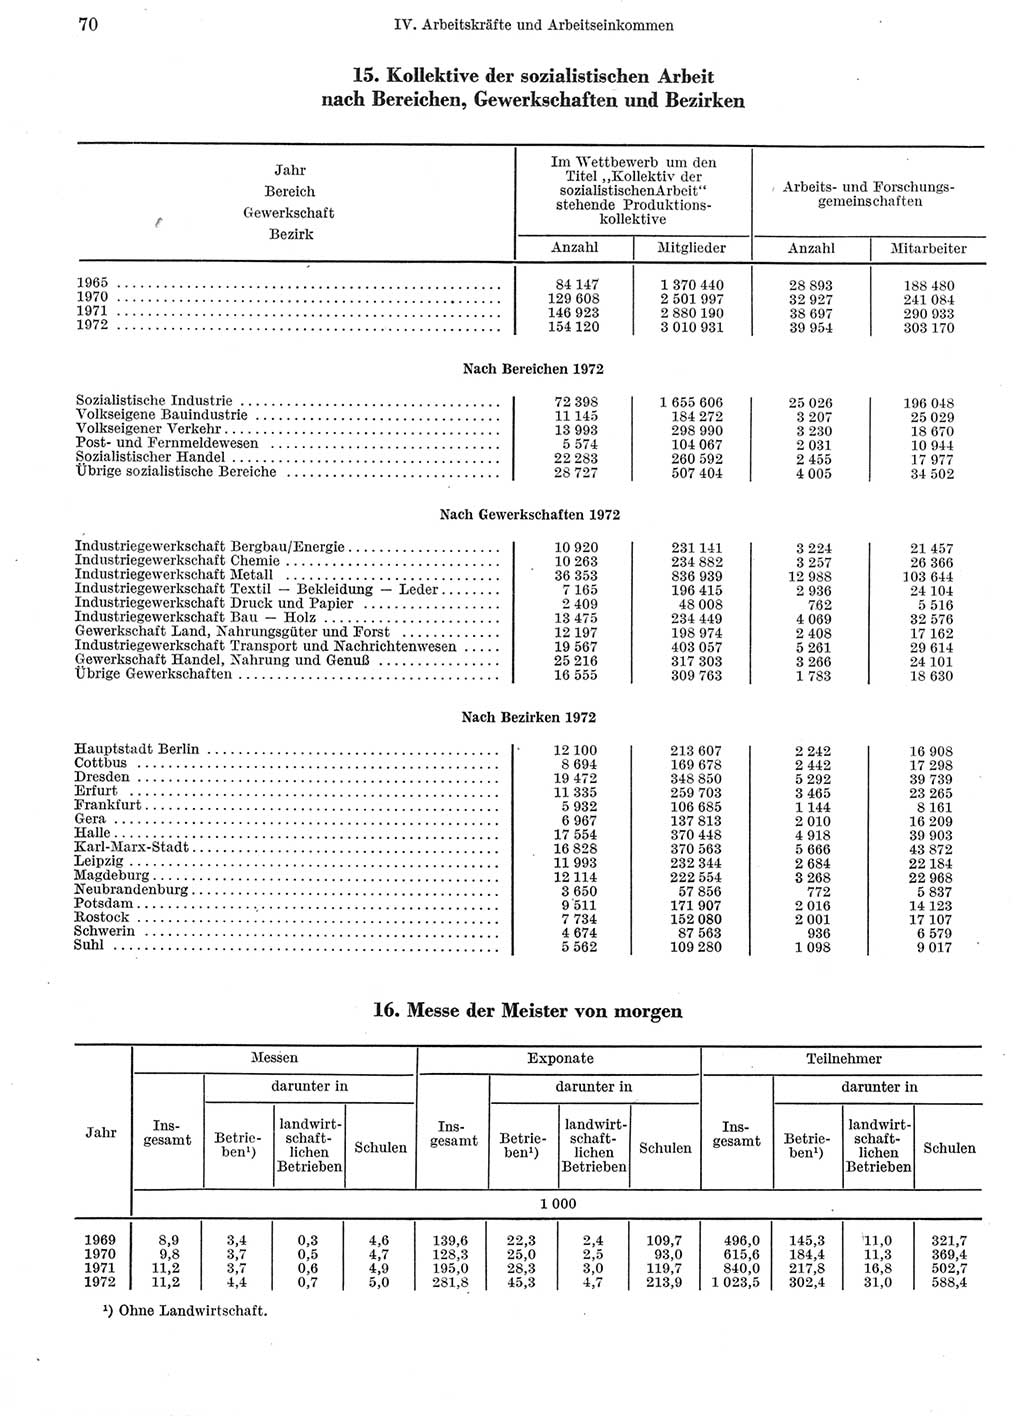 Statistisches Jahrbuch der Deutschen Demokratischen Republik (DDR) 1973, Seite 70 (Stat. Jb. DDR 1973, S. 70)